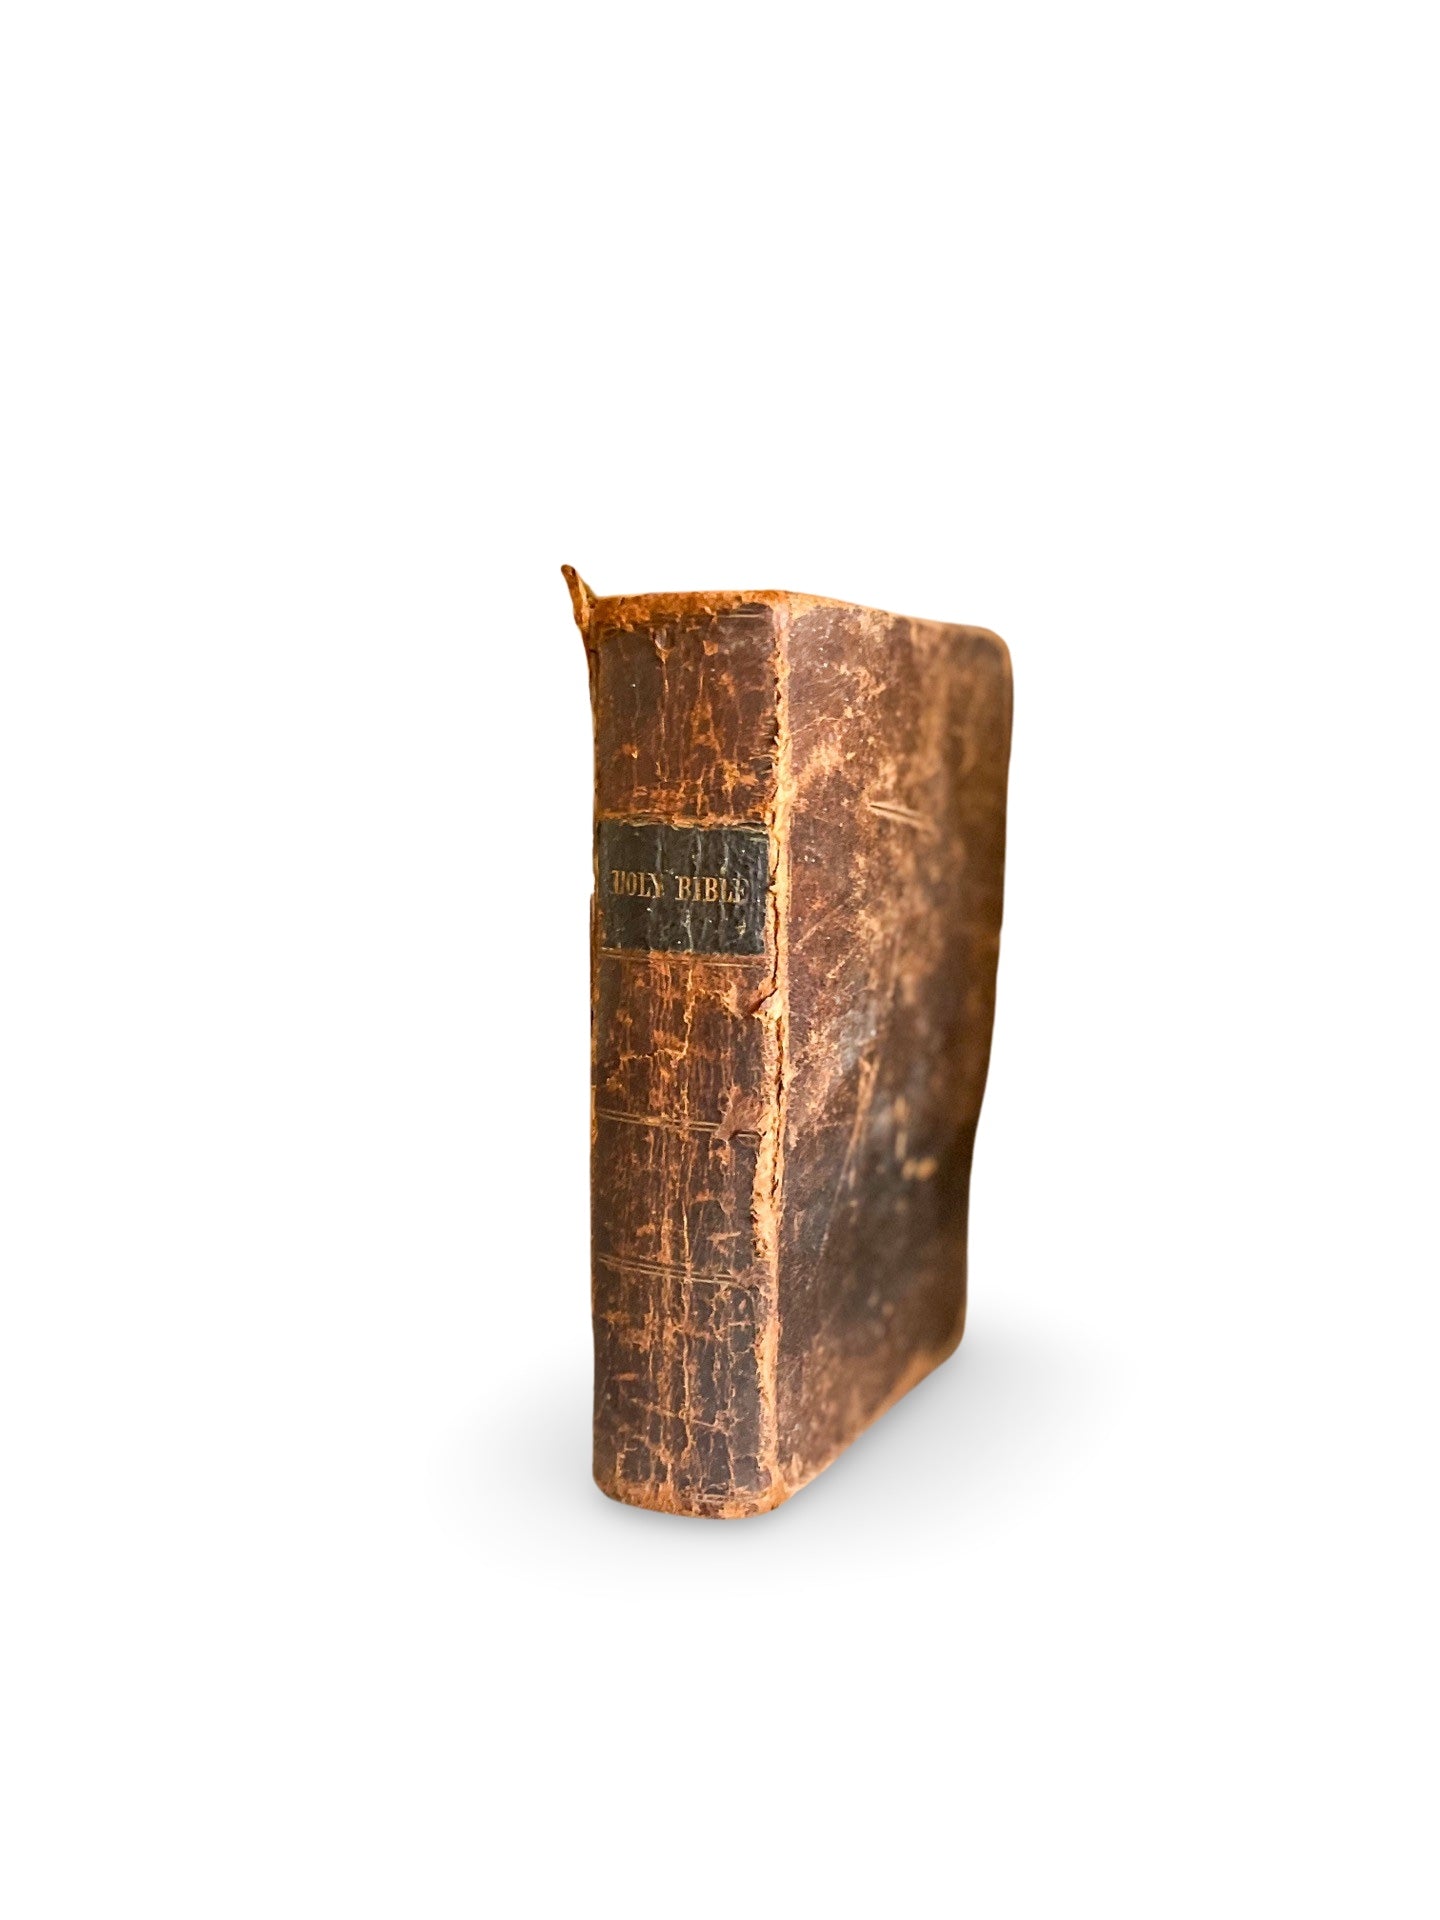 Antique Bible 1847